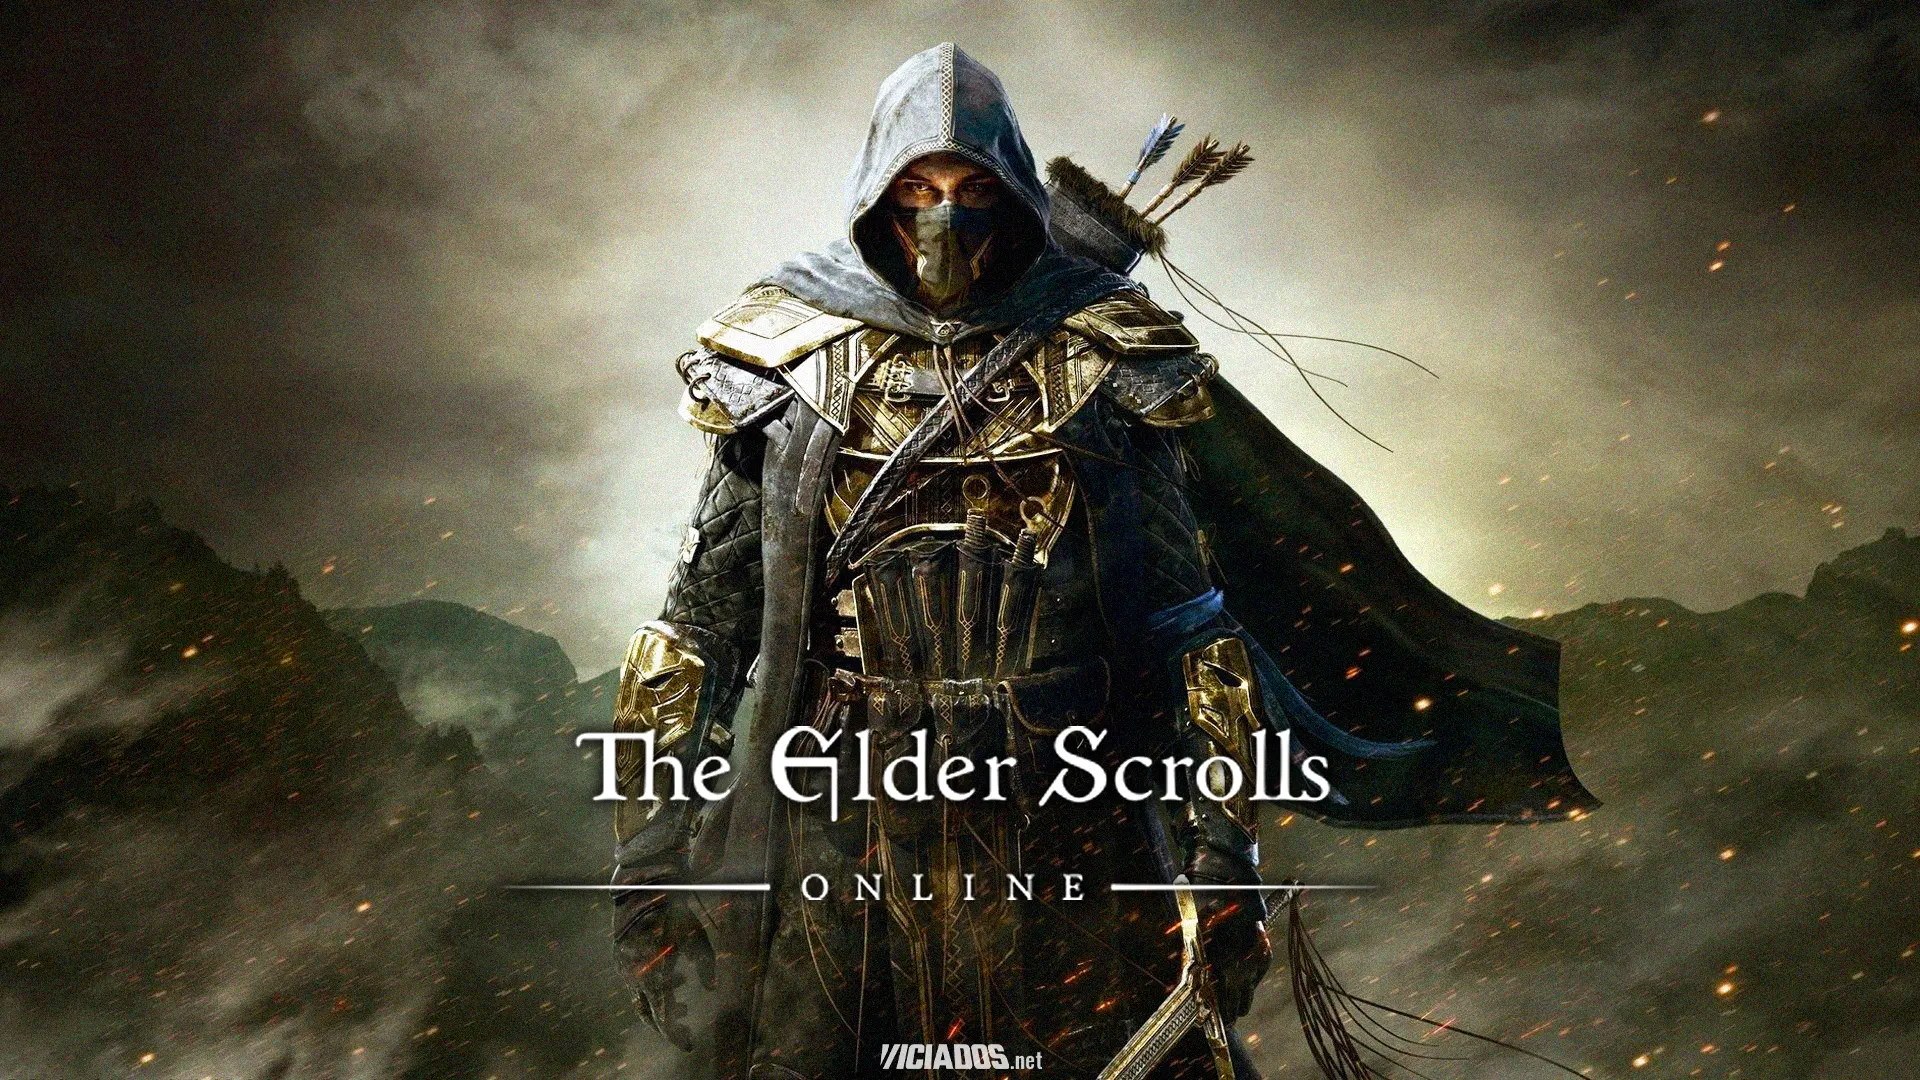 The Elder Scrolls Online está totalmente gratuito; Resgate agora! 2023 Viciados